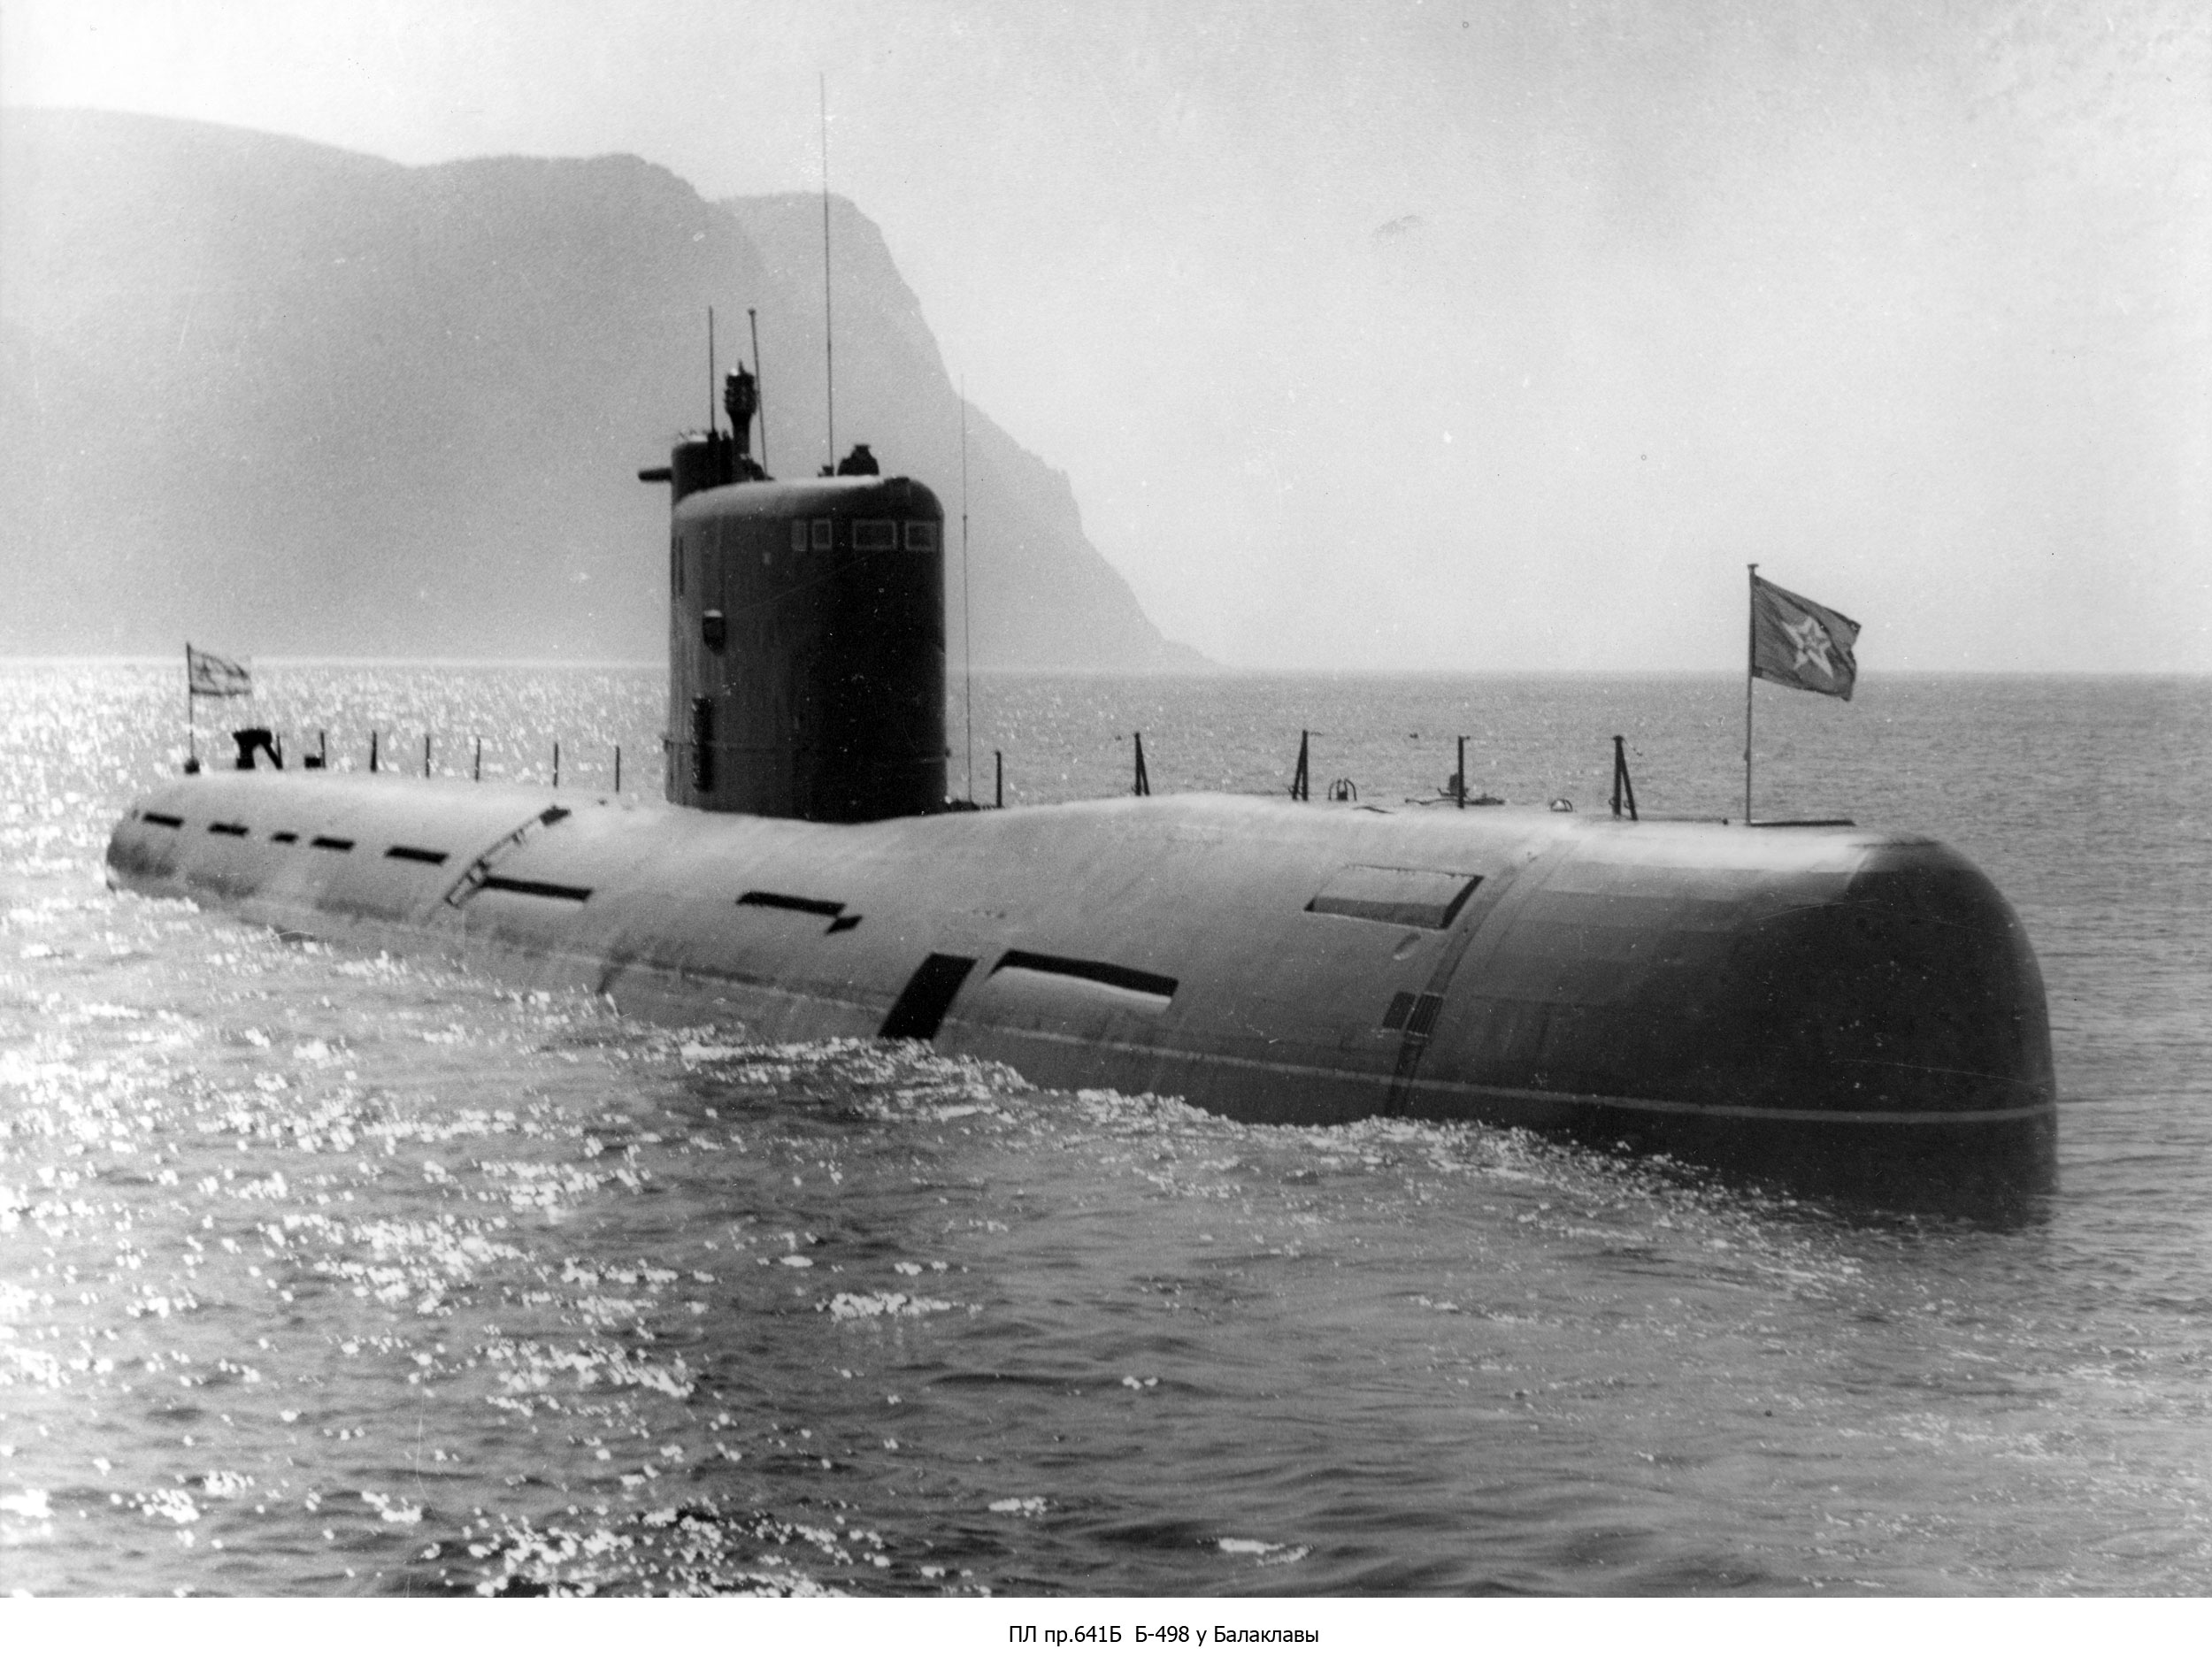 Пл c. 641б подводная лодка. Подводные лодки проекта 641б. Подводная лодка проект 641. Подлодка проекта 641б.